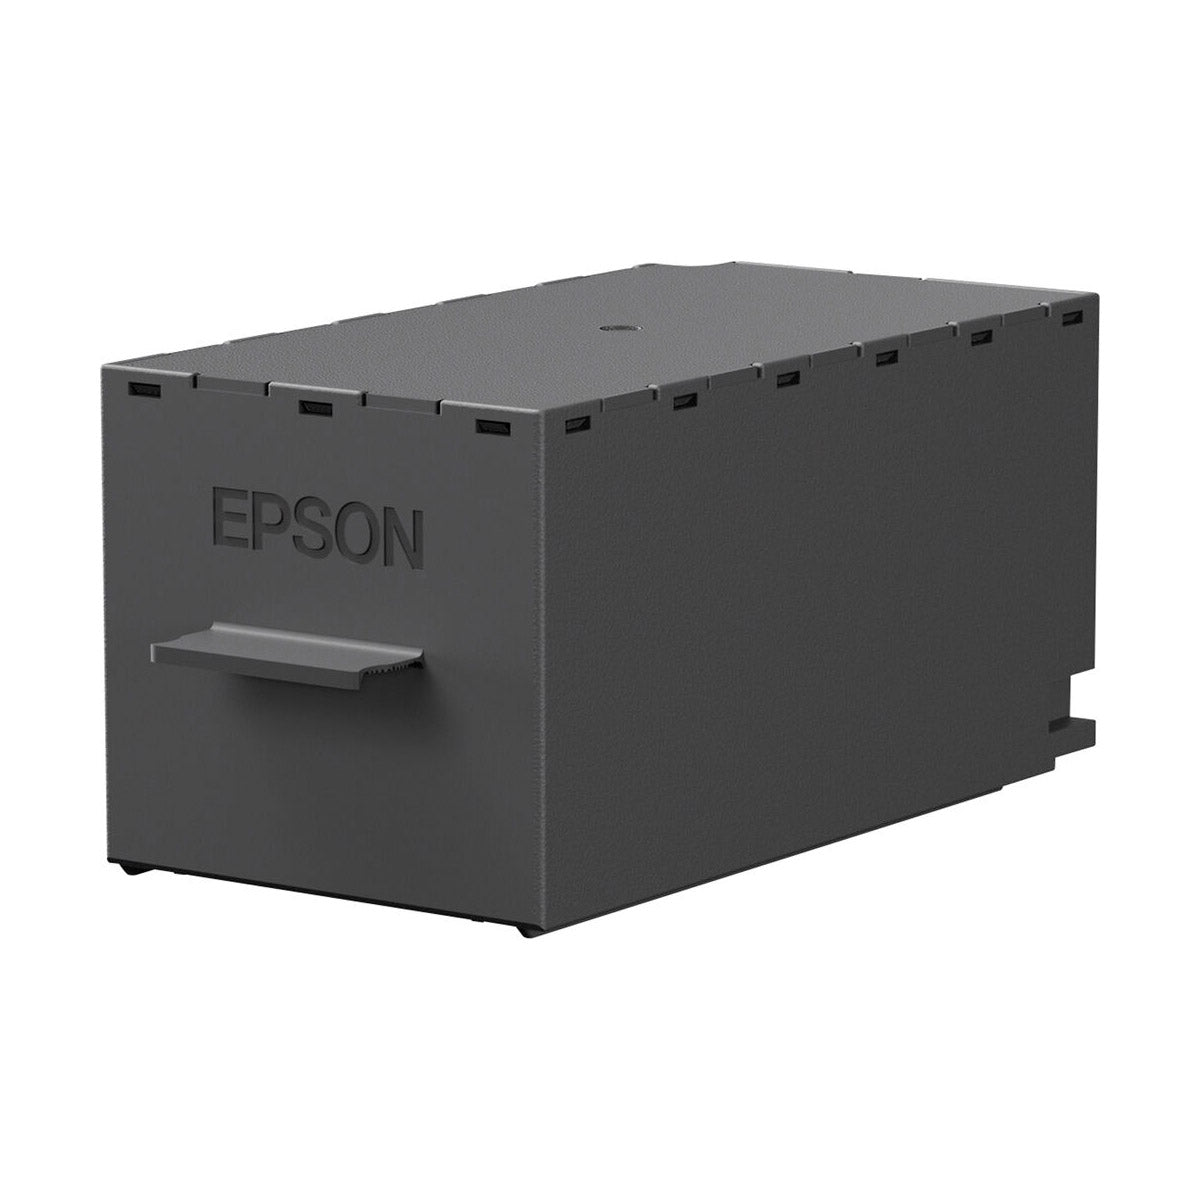 Epson Maintenance Box for SureColor P700 & P900